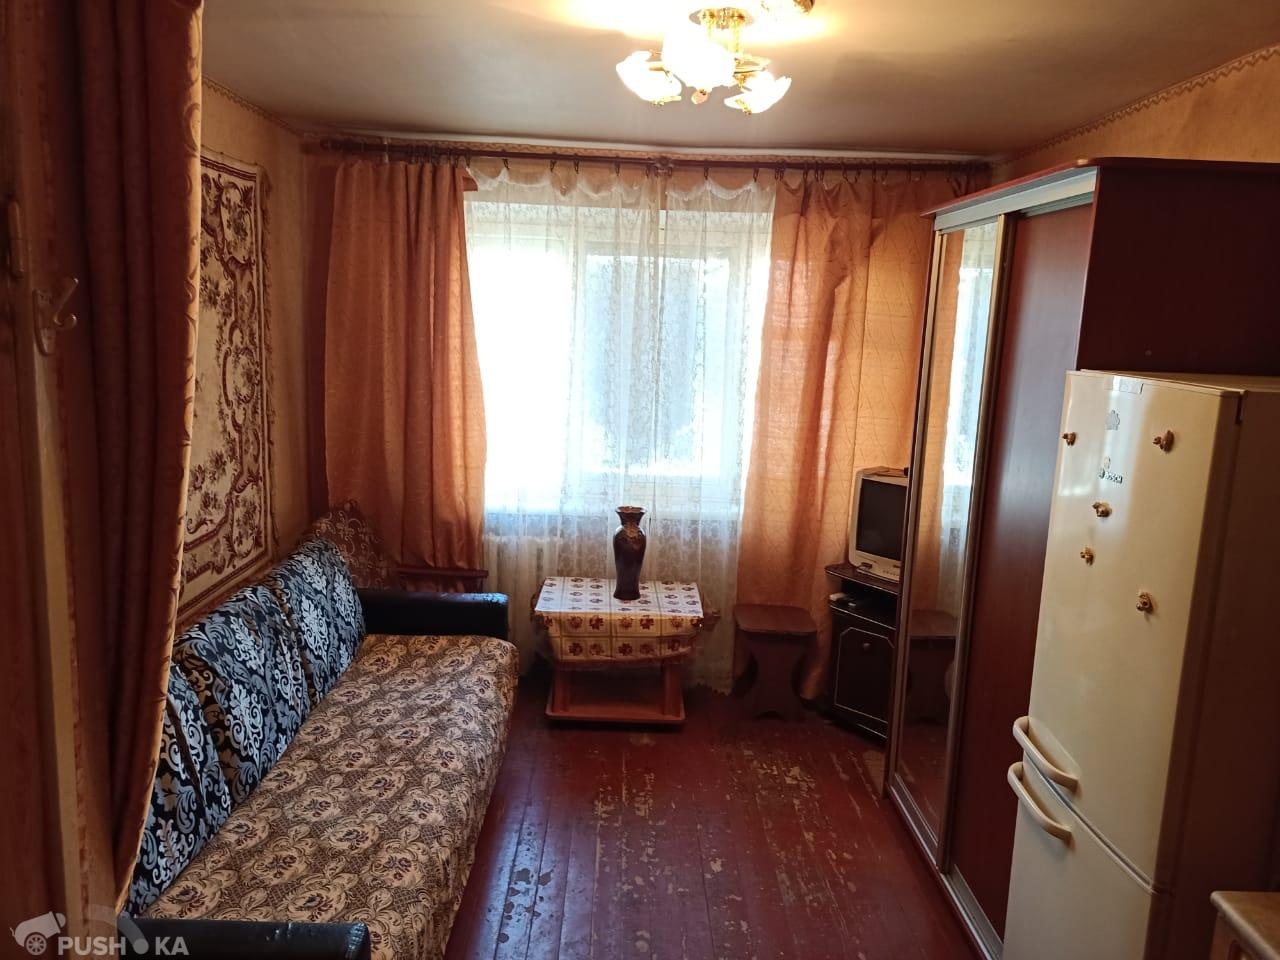 Продаётся 2-комнатная комната 13.8 кв.м. этаж 3/5 за 280 000 руб 